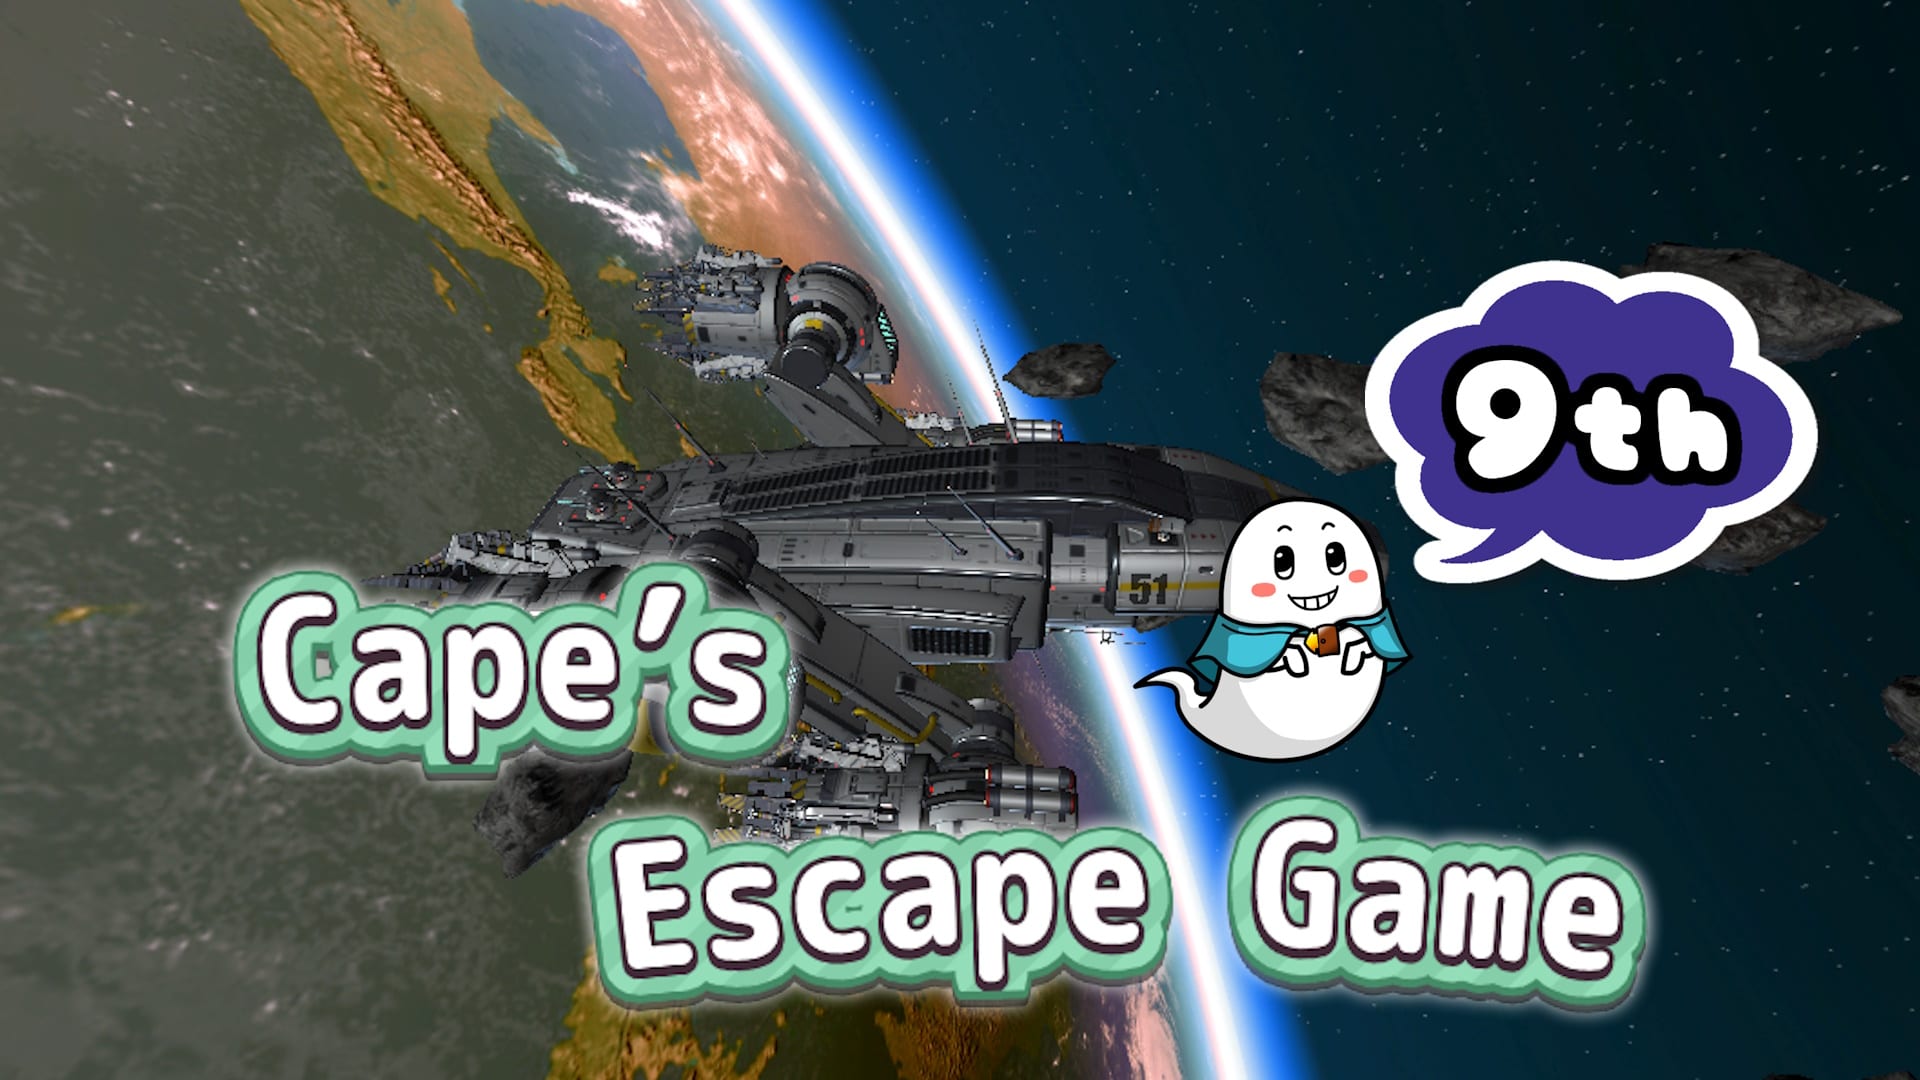 Cape's Escape Game 9th Room